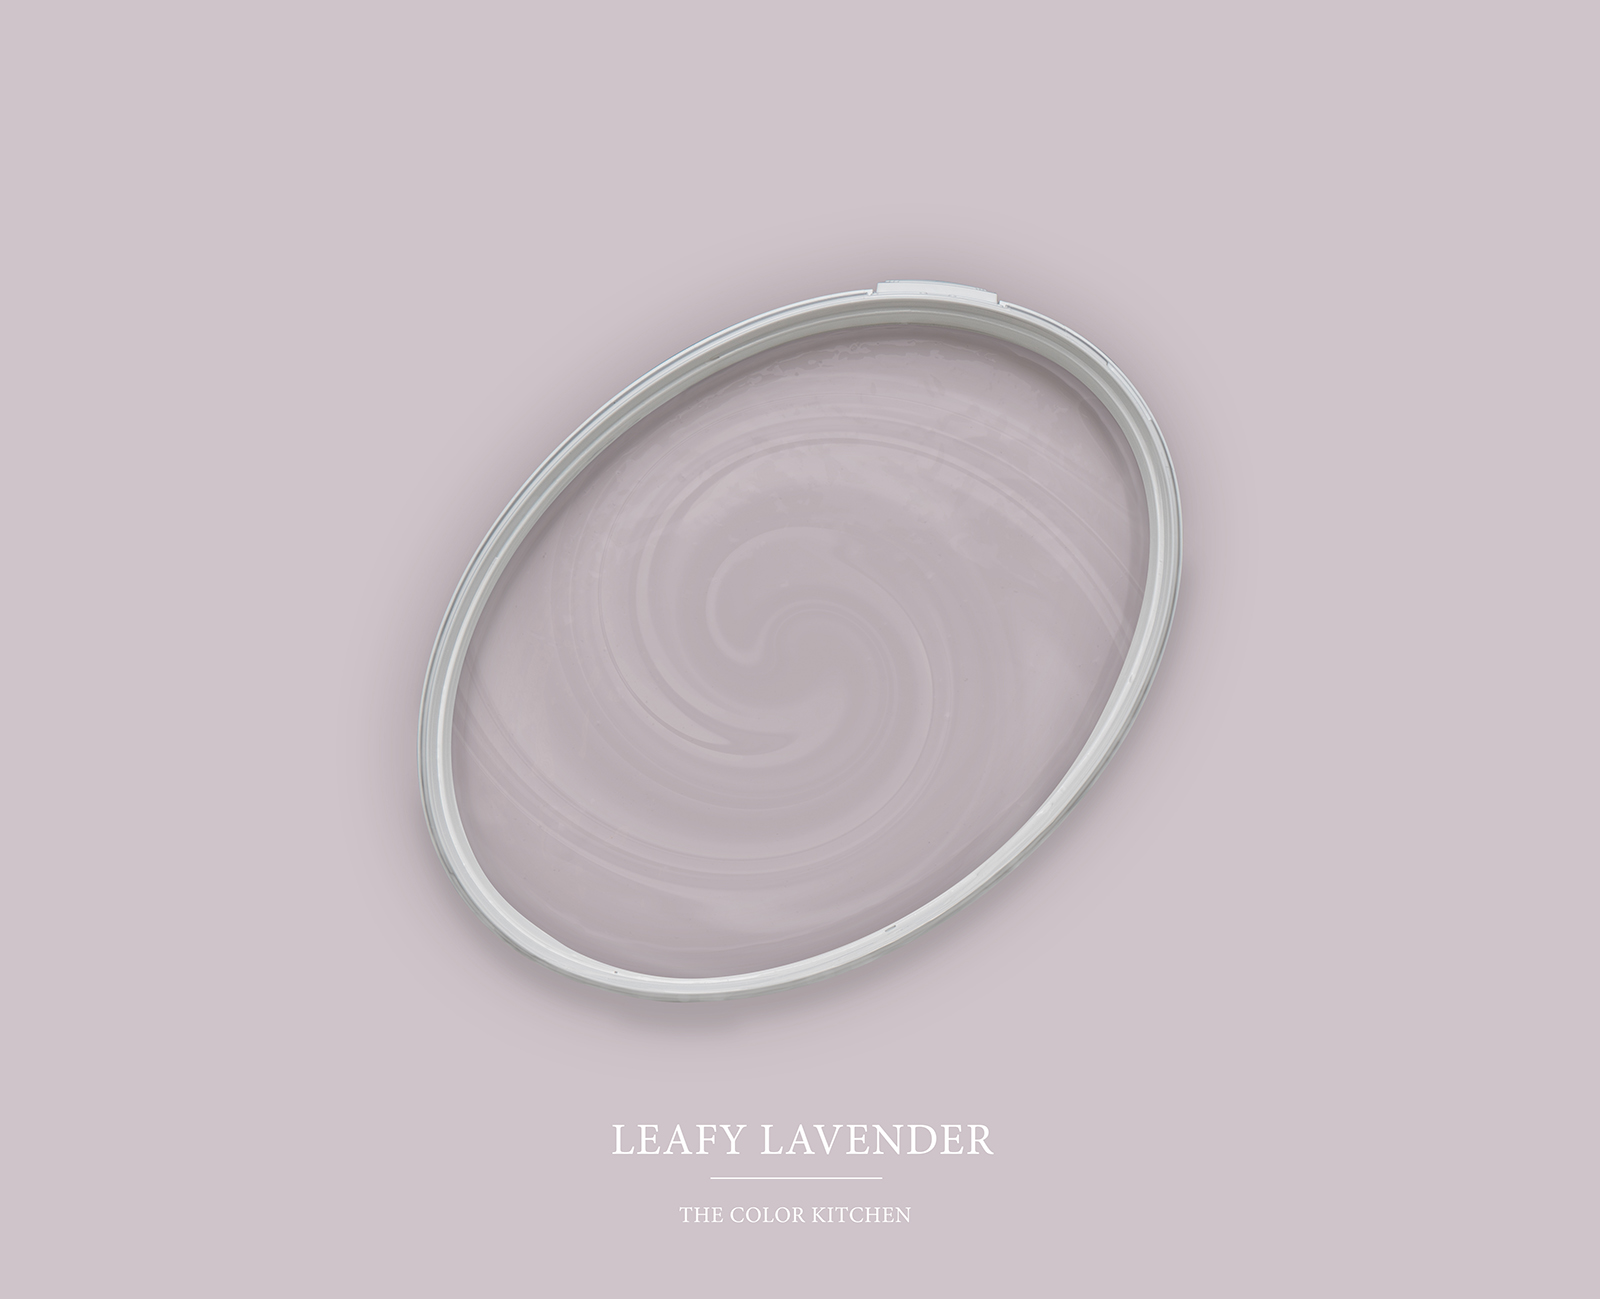         Wandfarbe TCK2004 »Leafy Lavender« in kühlem Lavendelton – 2,5 Liter
    